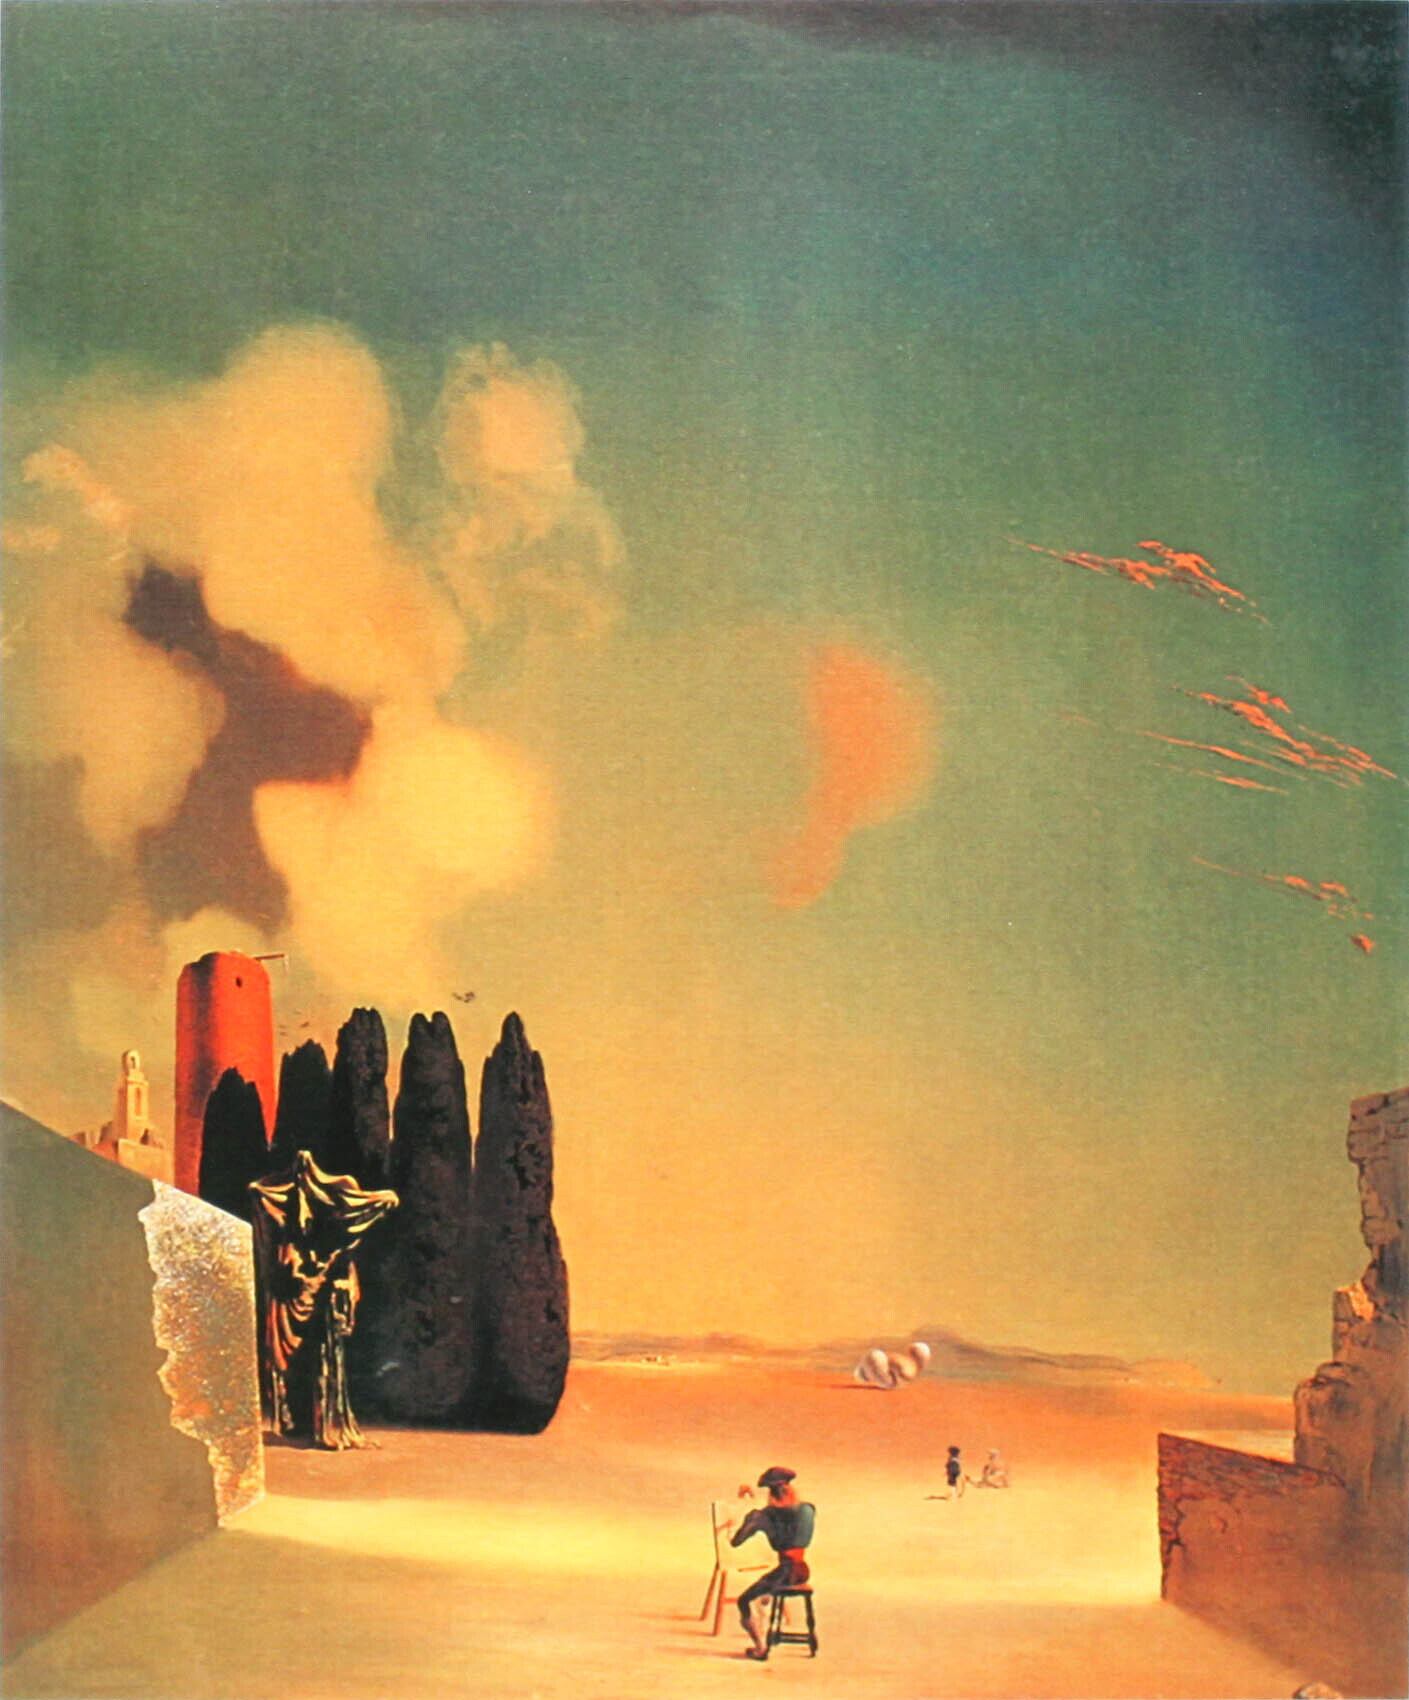 サルバドール・ダリ「謎めいた要素のある風景」作品証明書・展示用フック・限定375部エディション付複製画ジークレ